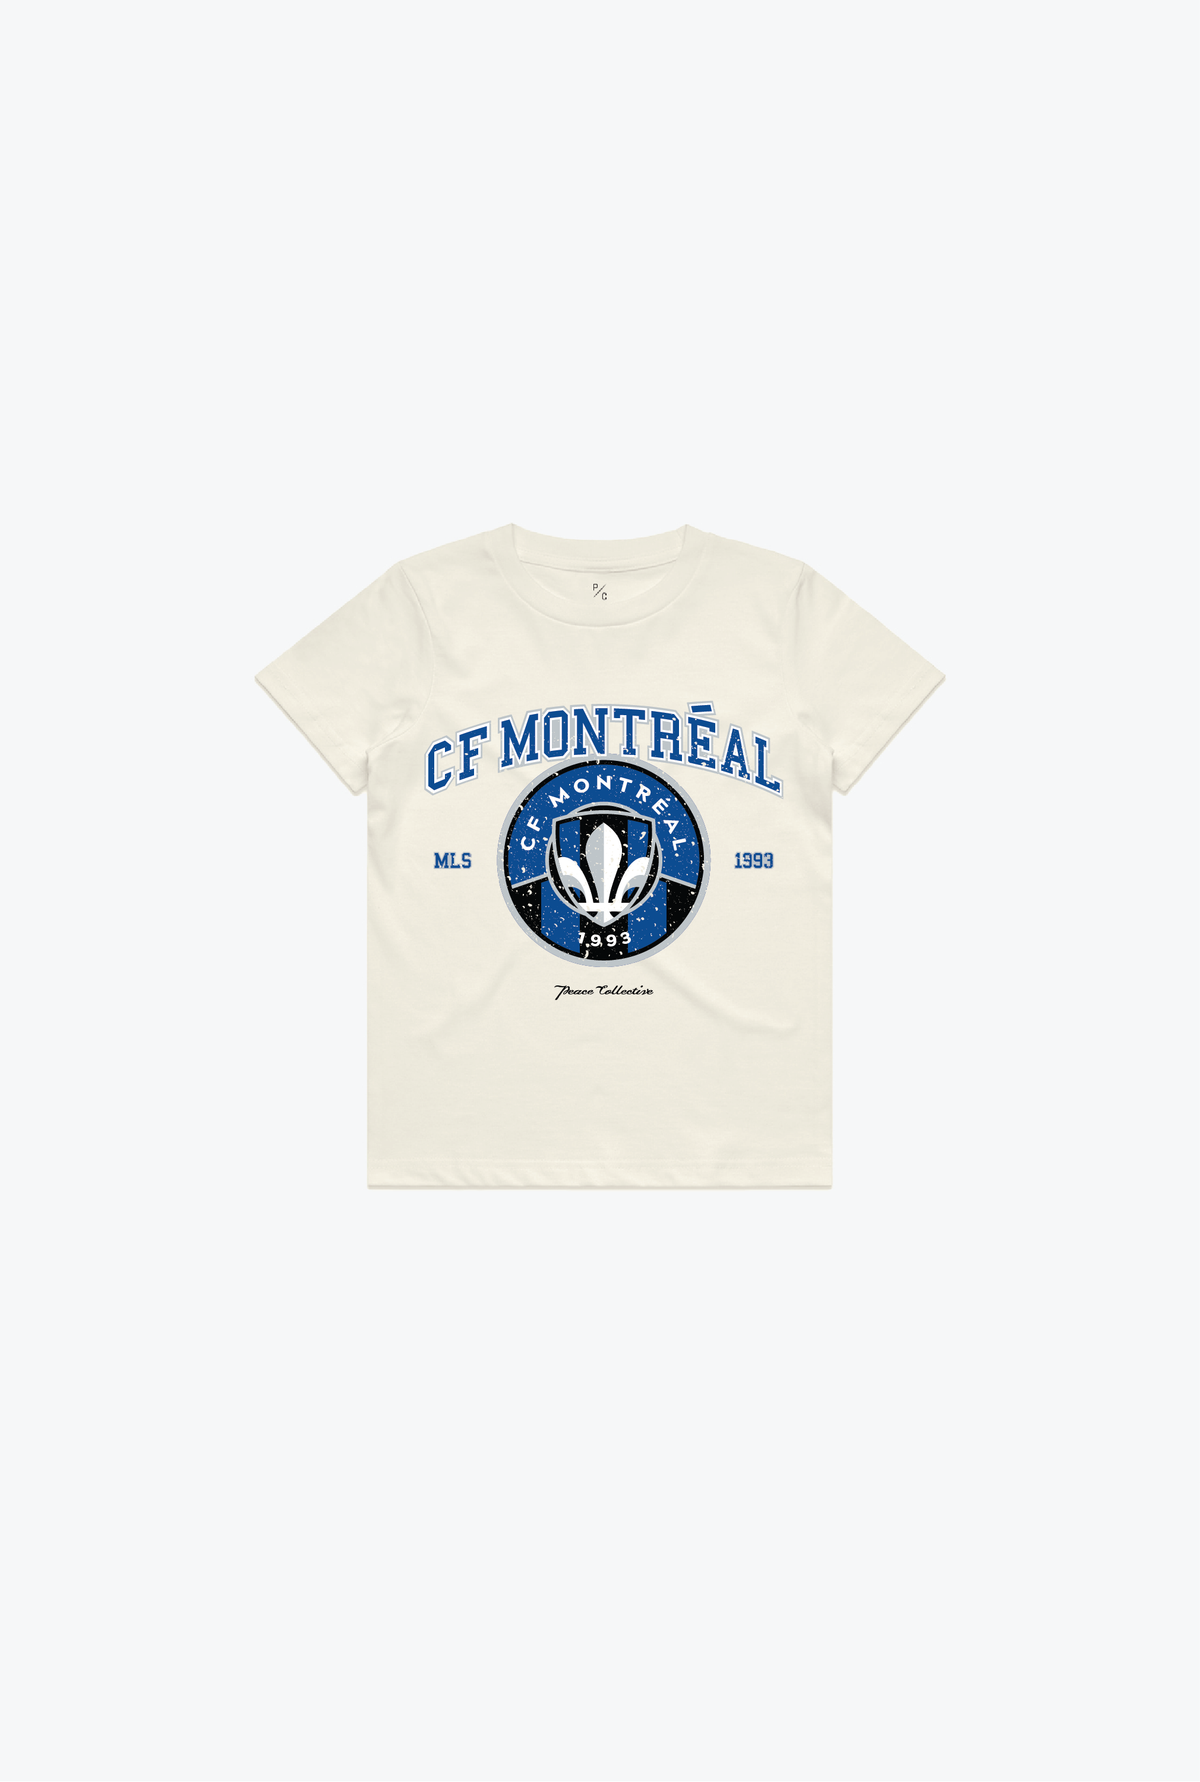 CF Montréal Vintage Washed Kids T-Shirt - Ivory